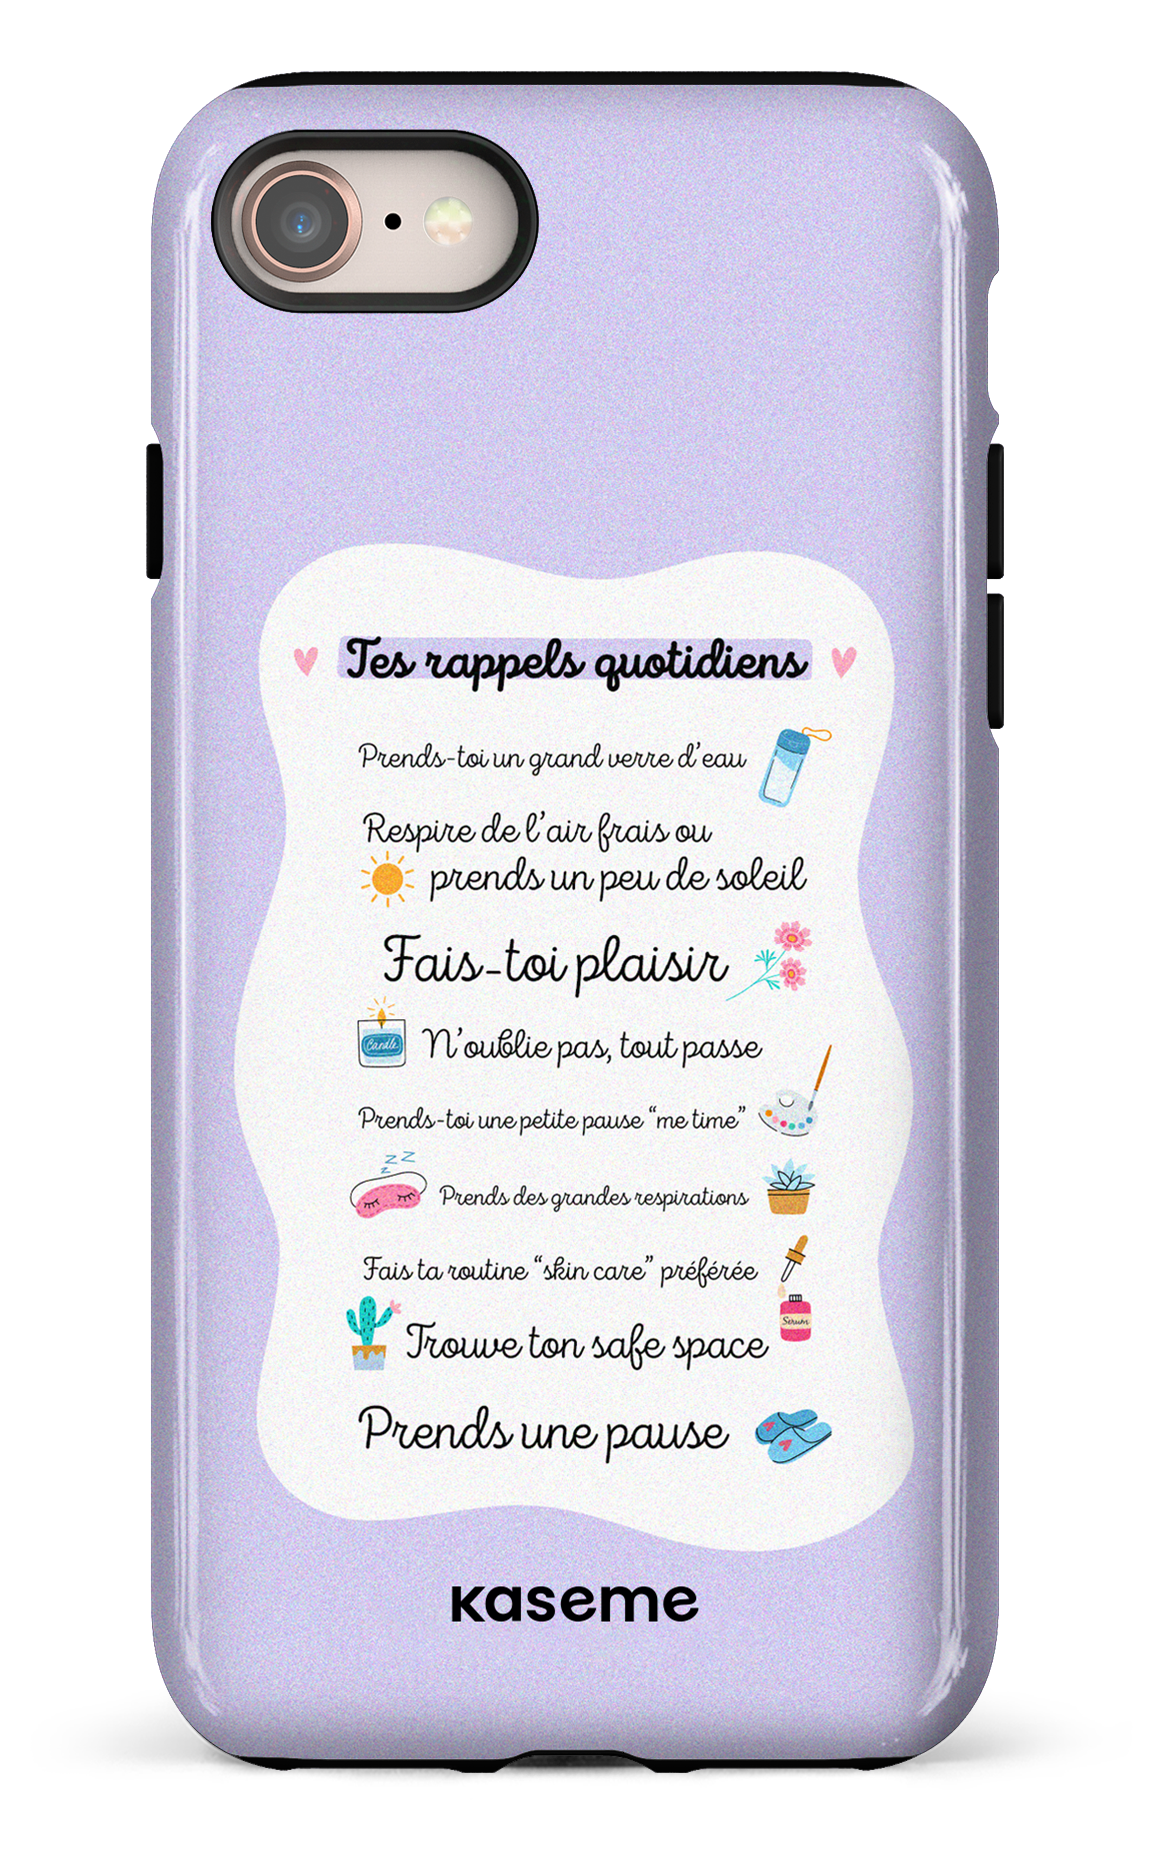 Tes rappels quotidiens purple - iPhone 7